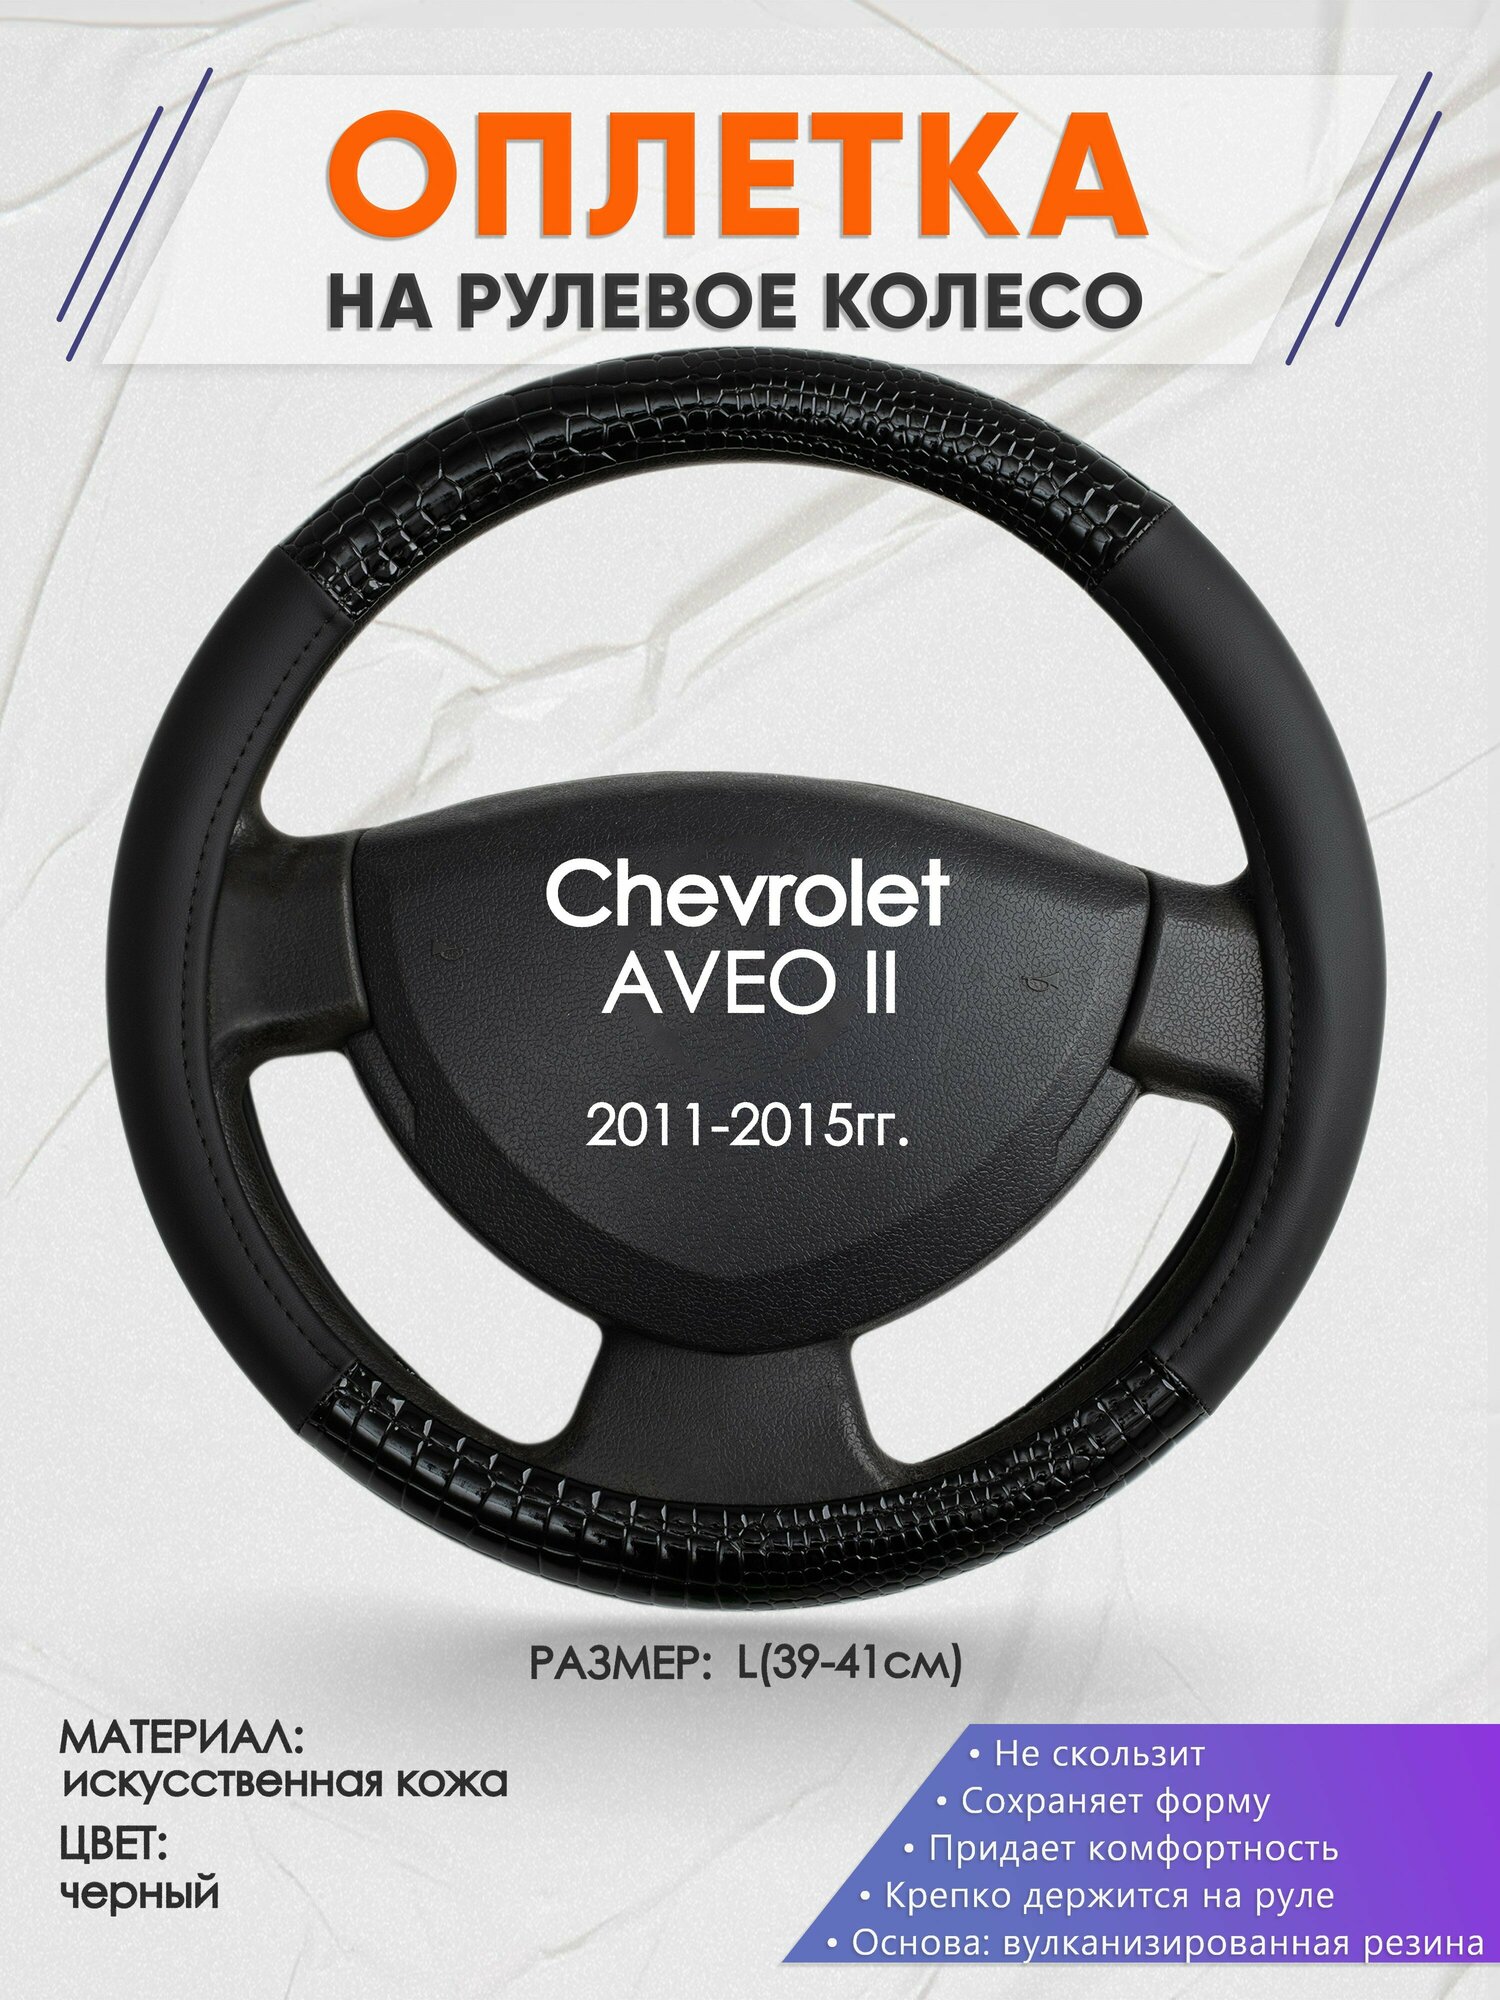 Оплетка на руль для Chevrolet AVEO 2(Шевроле Авео 2) 2011-2015 L(39-41см) Искусственная кожа 59